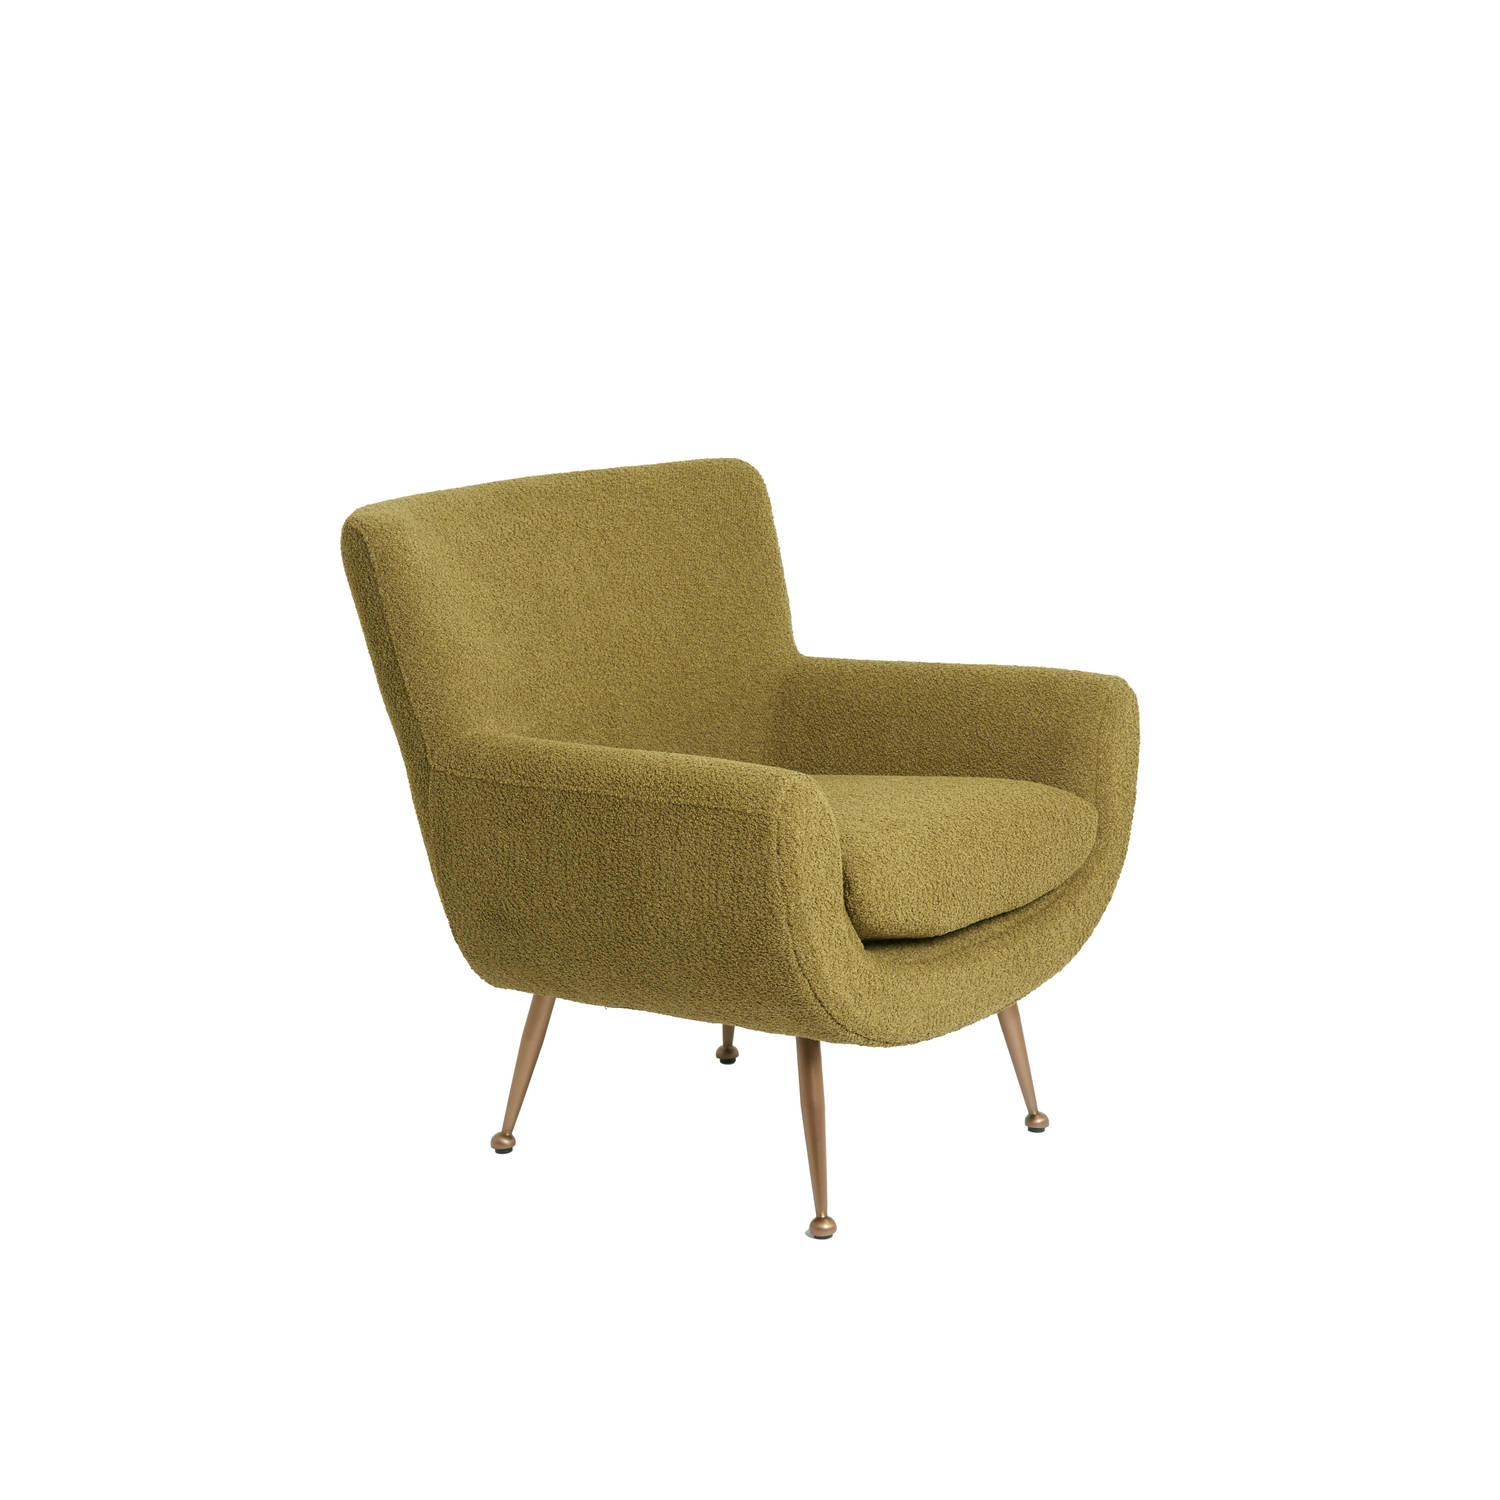 Light & Living Vinstra fauteuil bouclÃ© groen|brons